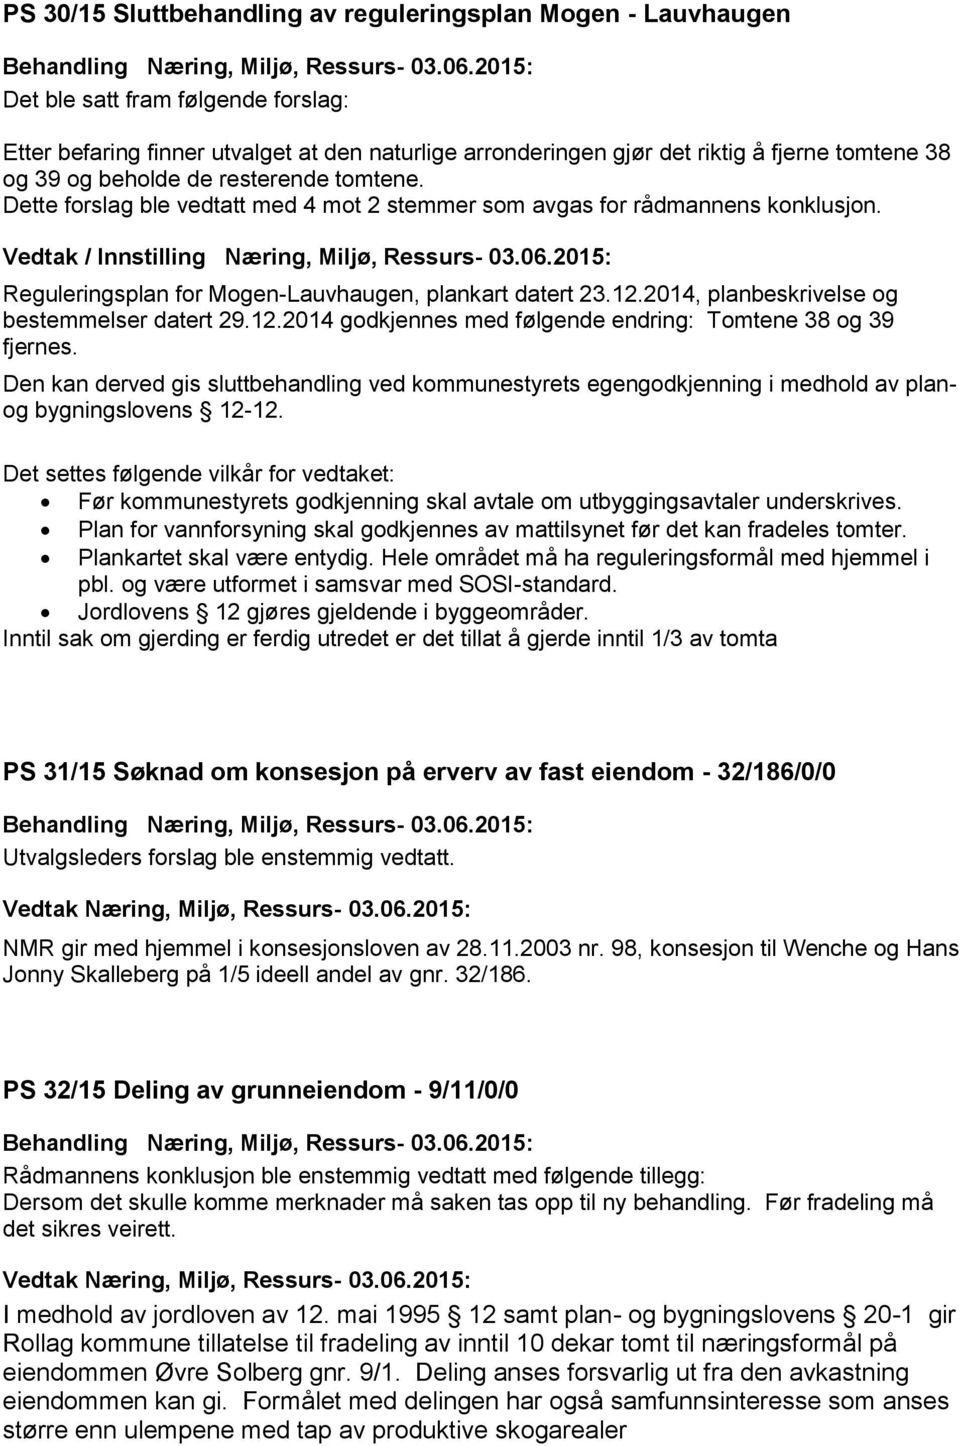 2015: Reguleringsplan for Mogen-Lauvhaugen, plankart datert 23.12.2014, planbeskrivelse og bestemmelser datert 29.12.2014 godkjennes med følgende endring: Tomtene 38 og 39 fjernes.